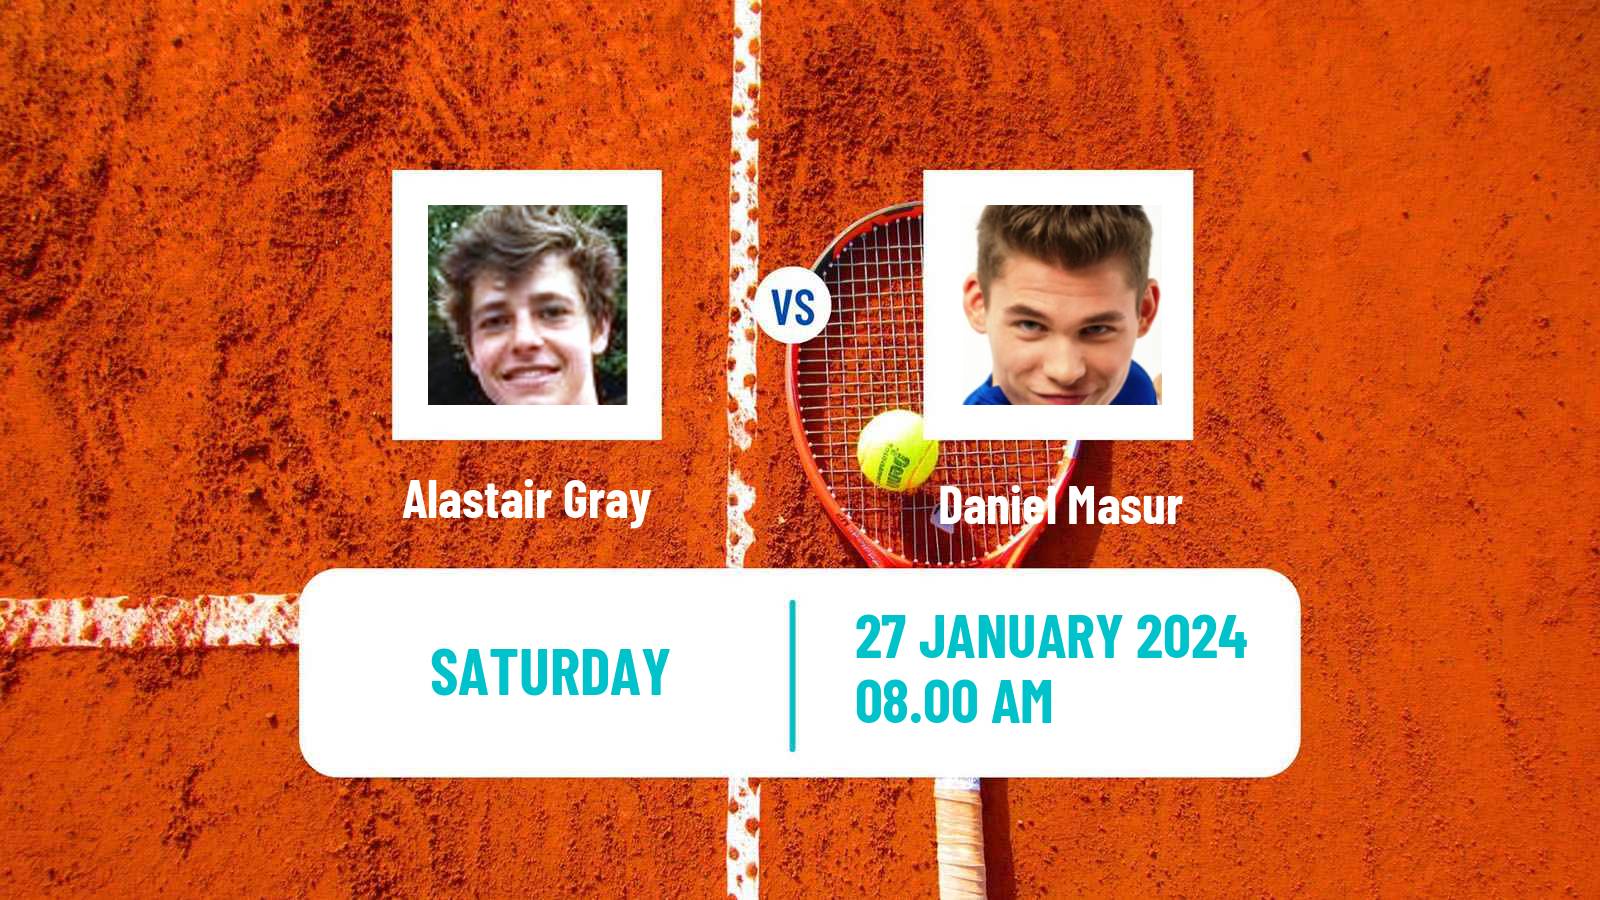 Tennis ITF M25 Nussloch Men Alastair Gray - Daniel Masur